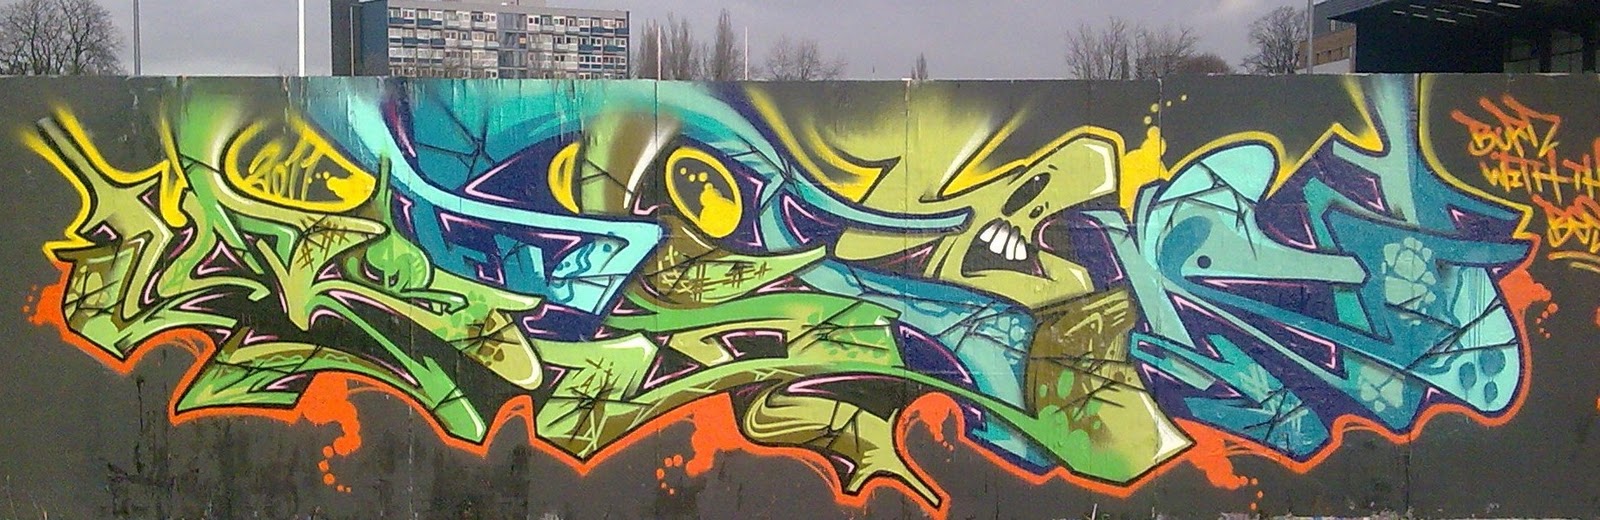 Redmond Neighborhood Blog Updated Graffiti Wall Art In Edge